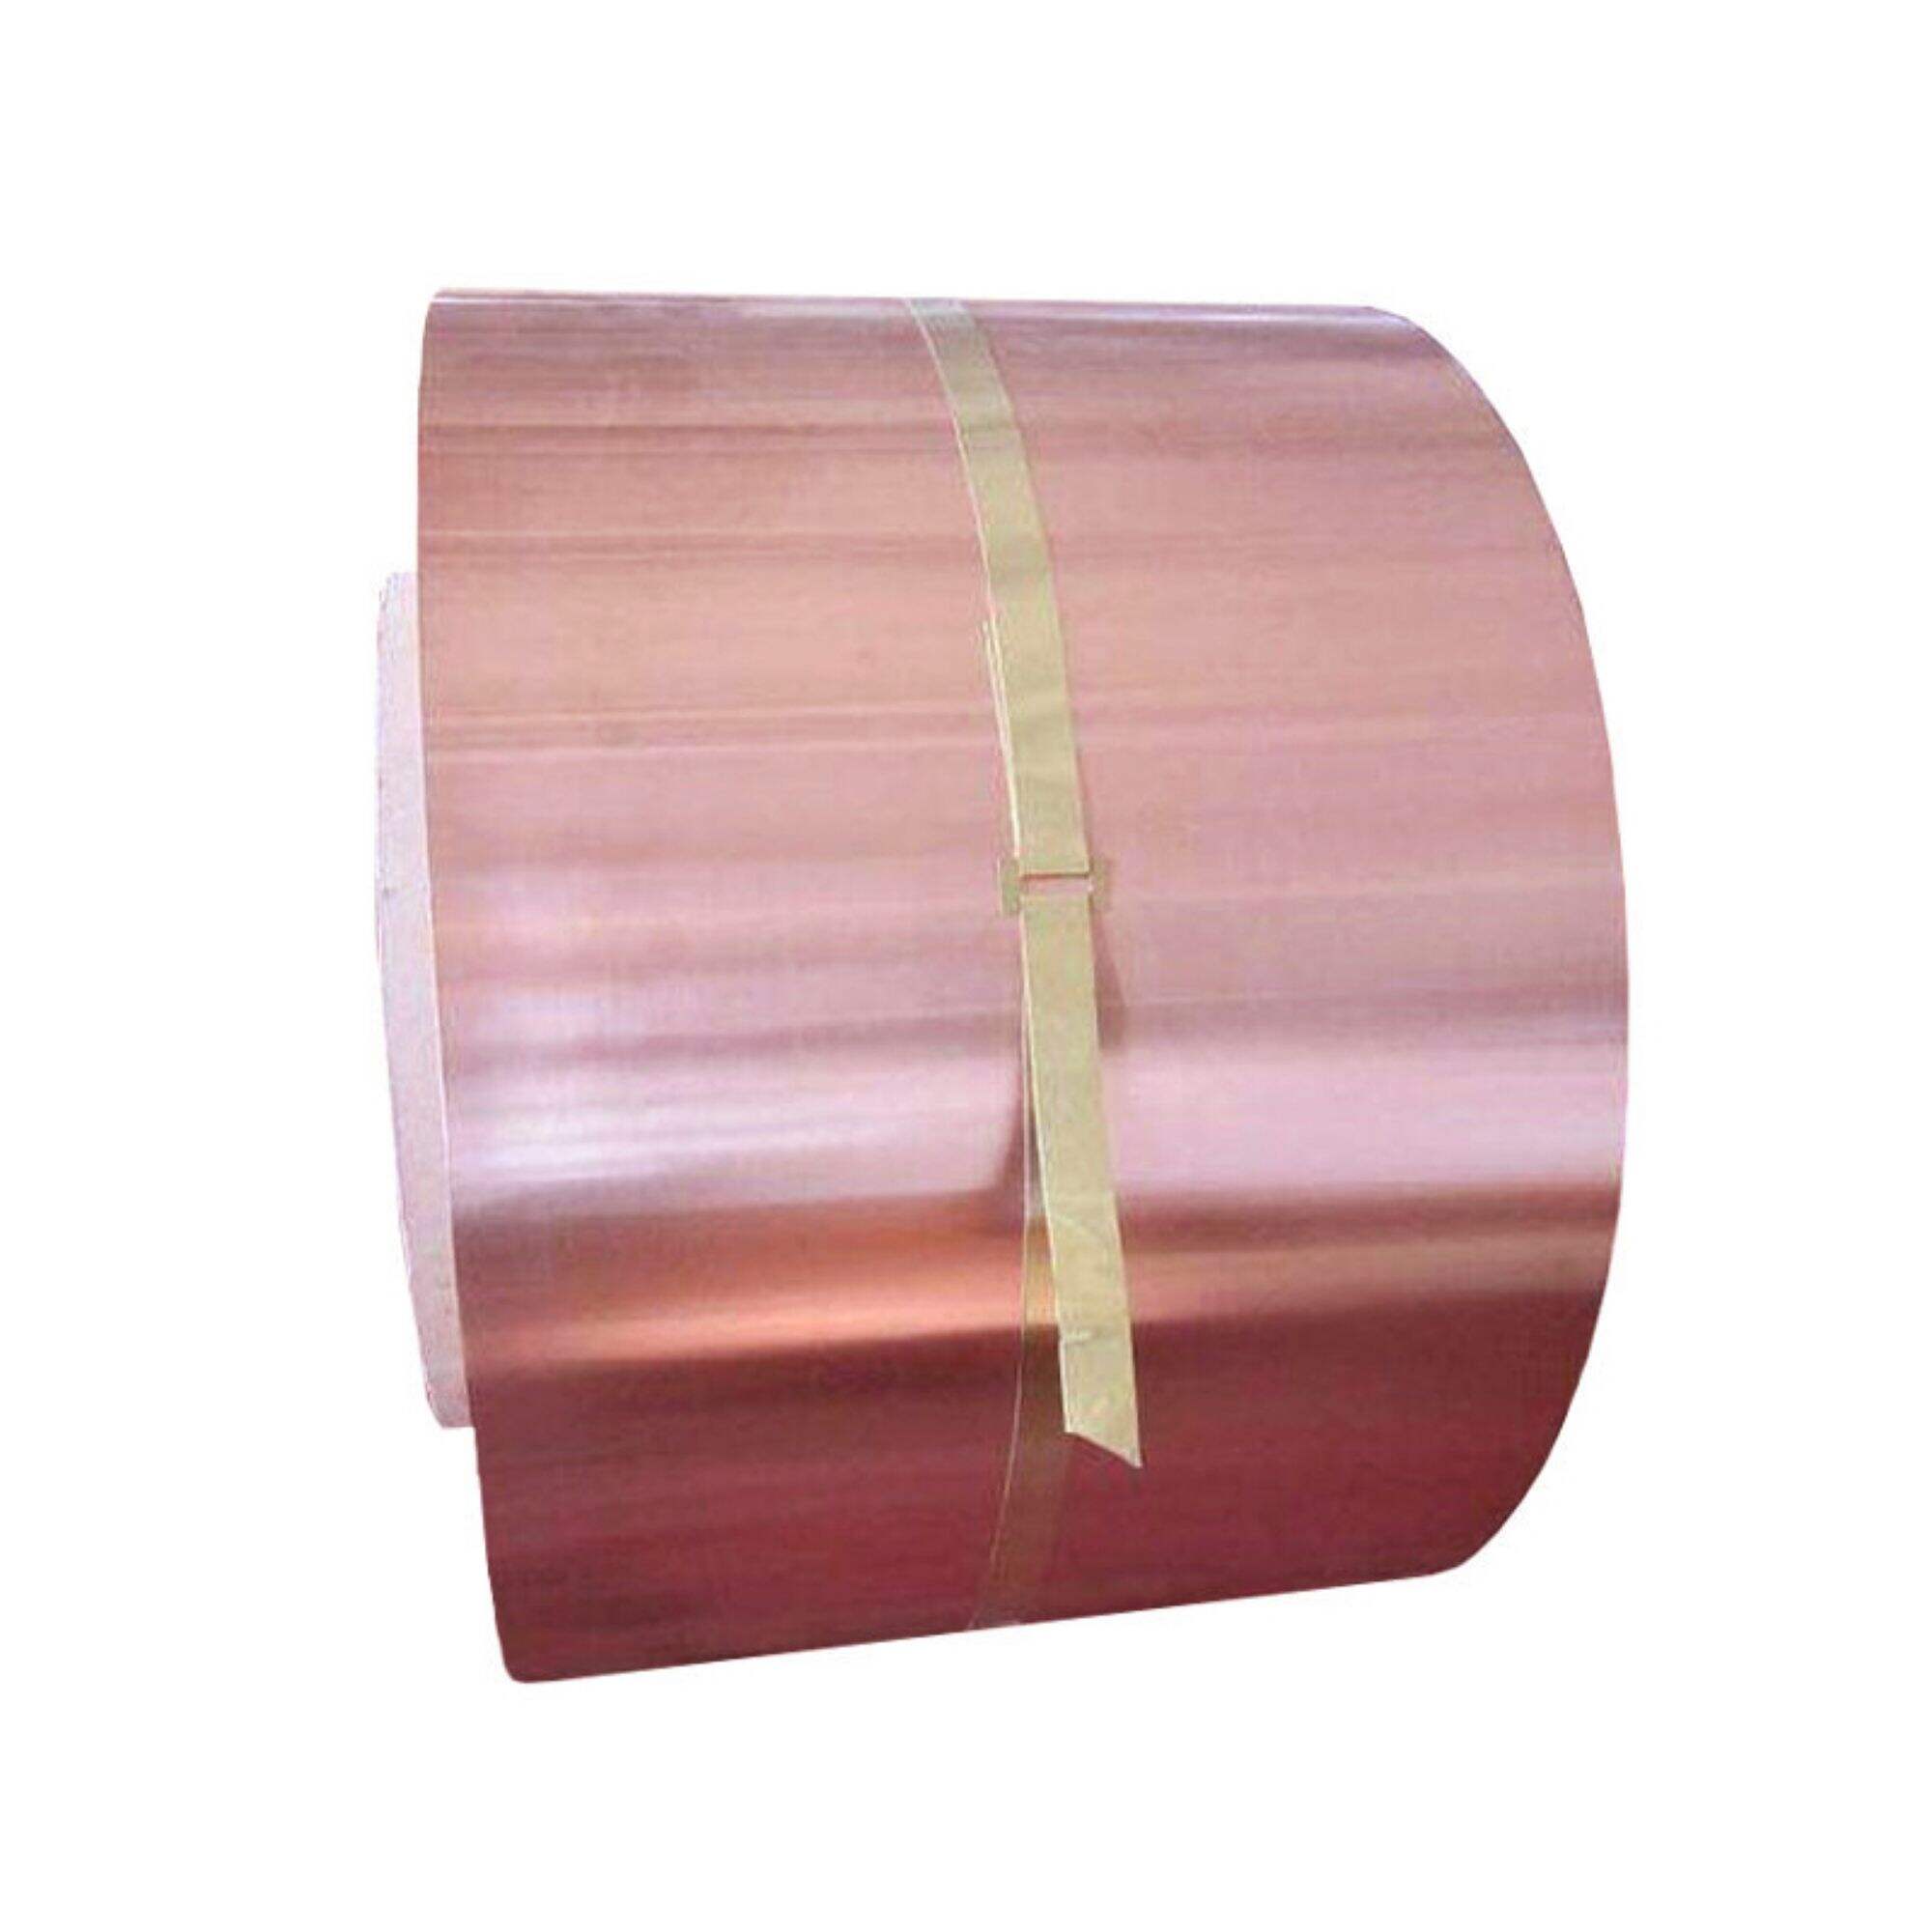 Factory sale c1100 c1020 c1201 c1220 0.5mm 1mm thick copper strip